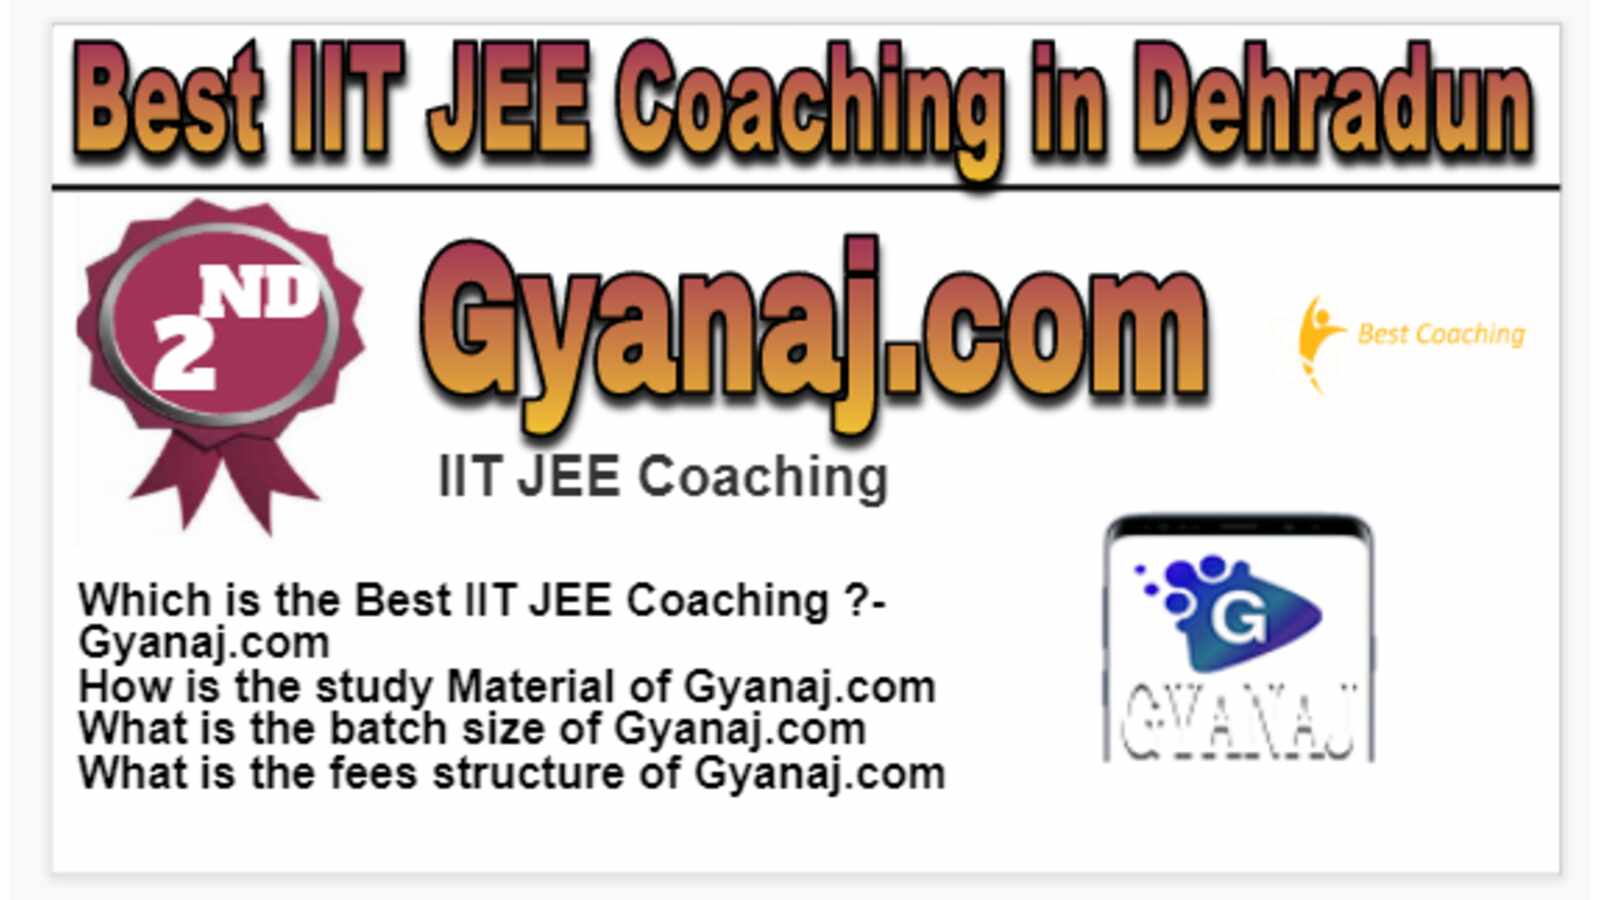 Rank 2 Best IIT JEE Coaching in Dehradun